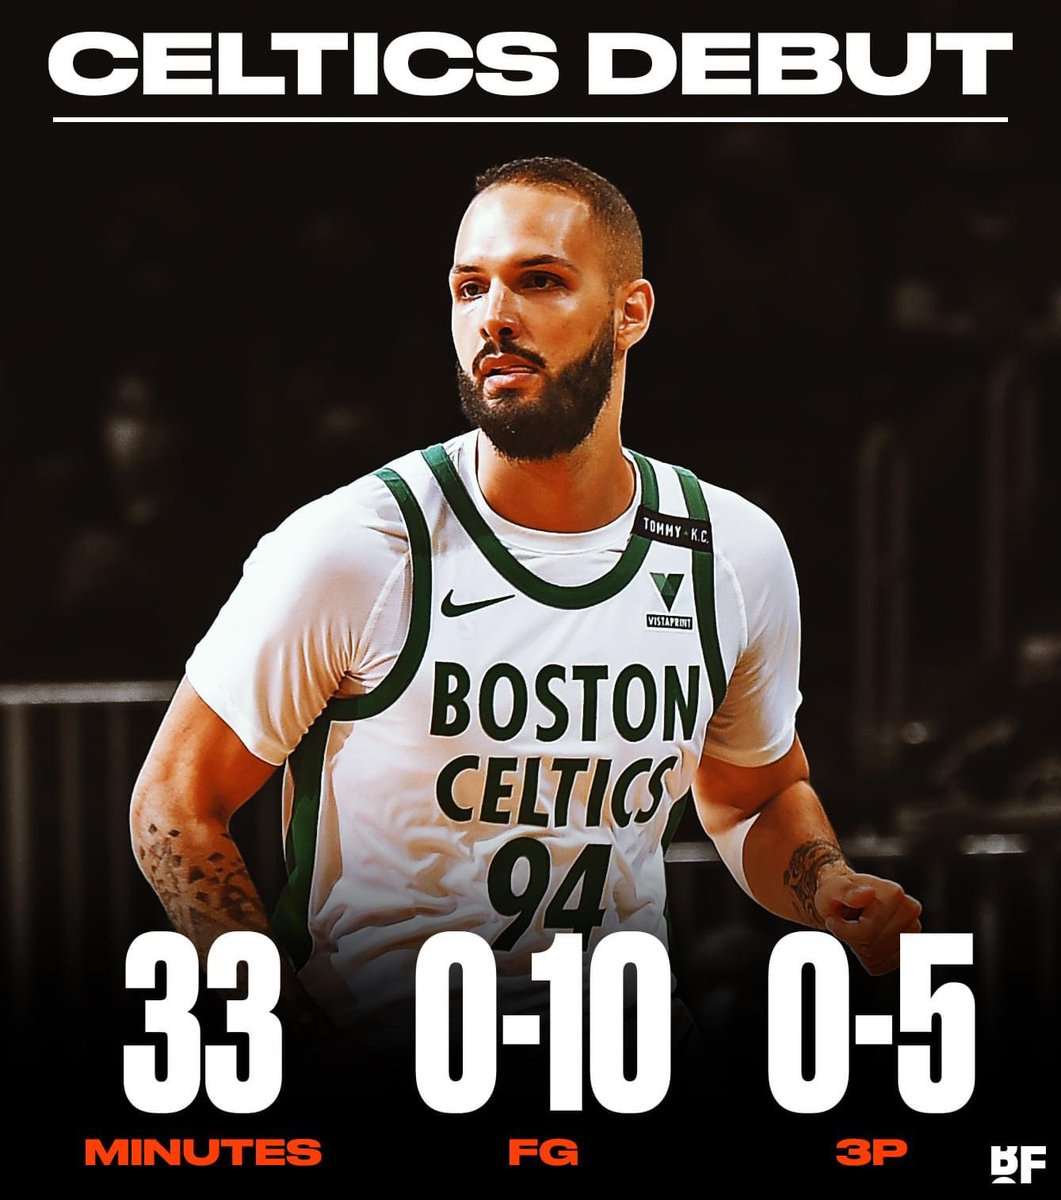 Evan Fournier thiết lập 'kỷ lục' trong ngày ra mắt Boston Celtics - Ảnh 2